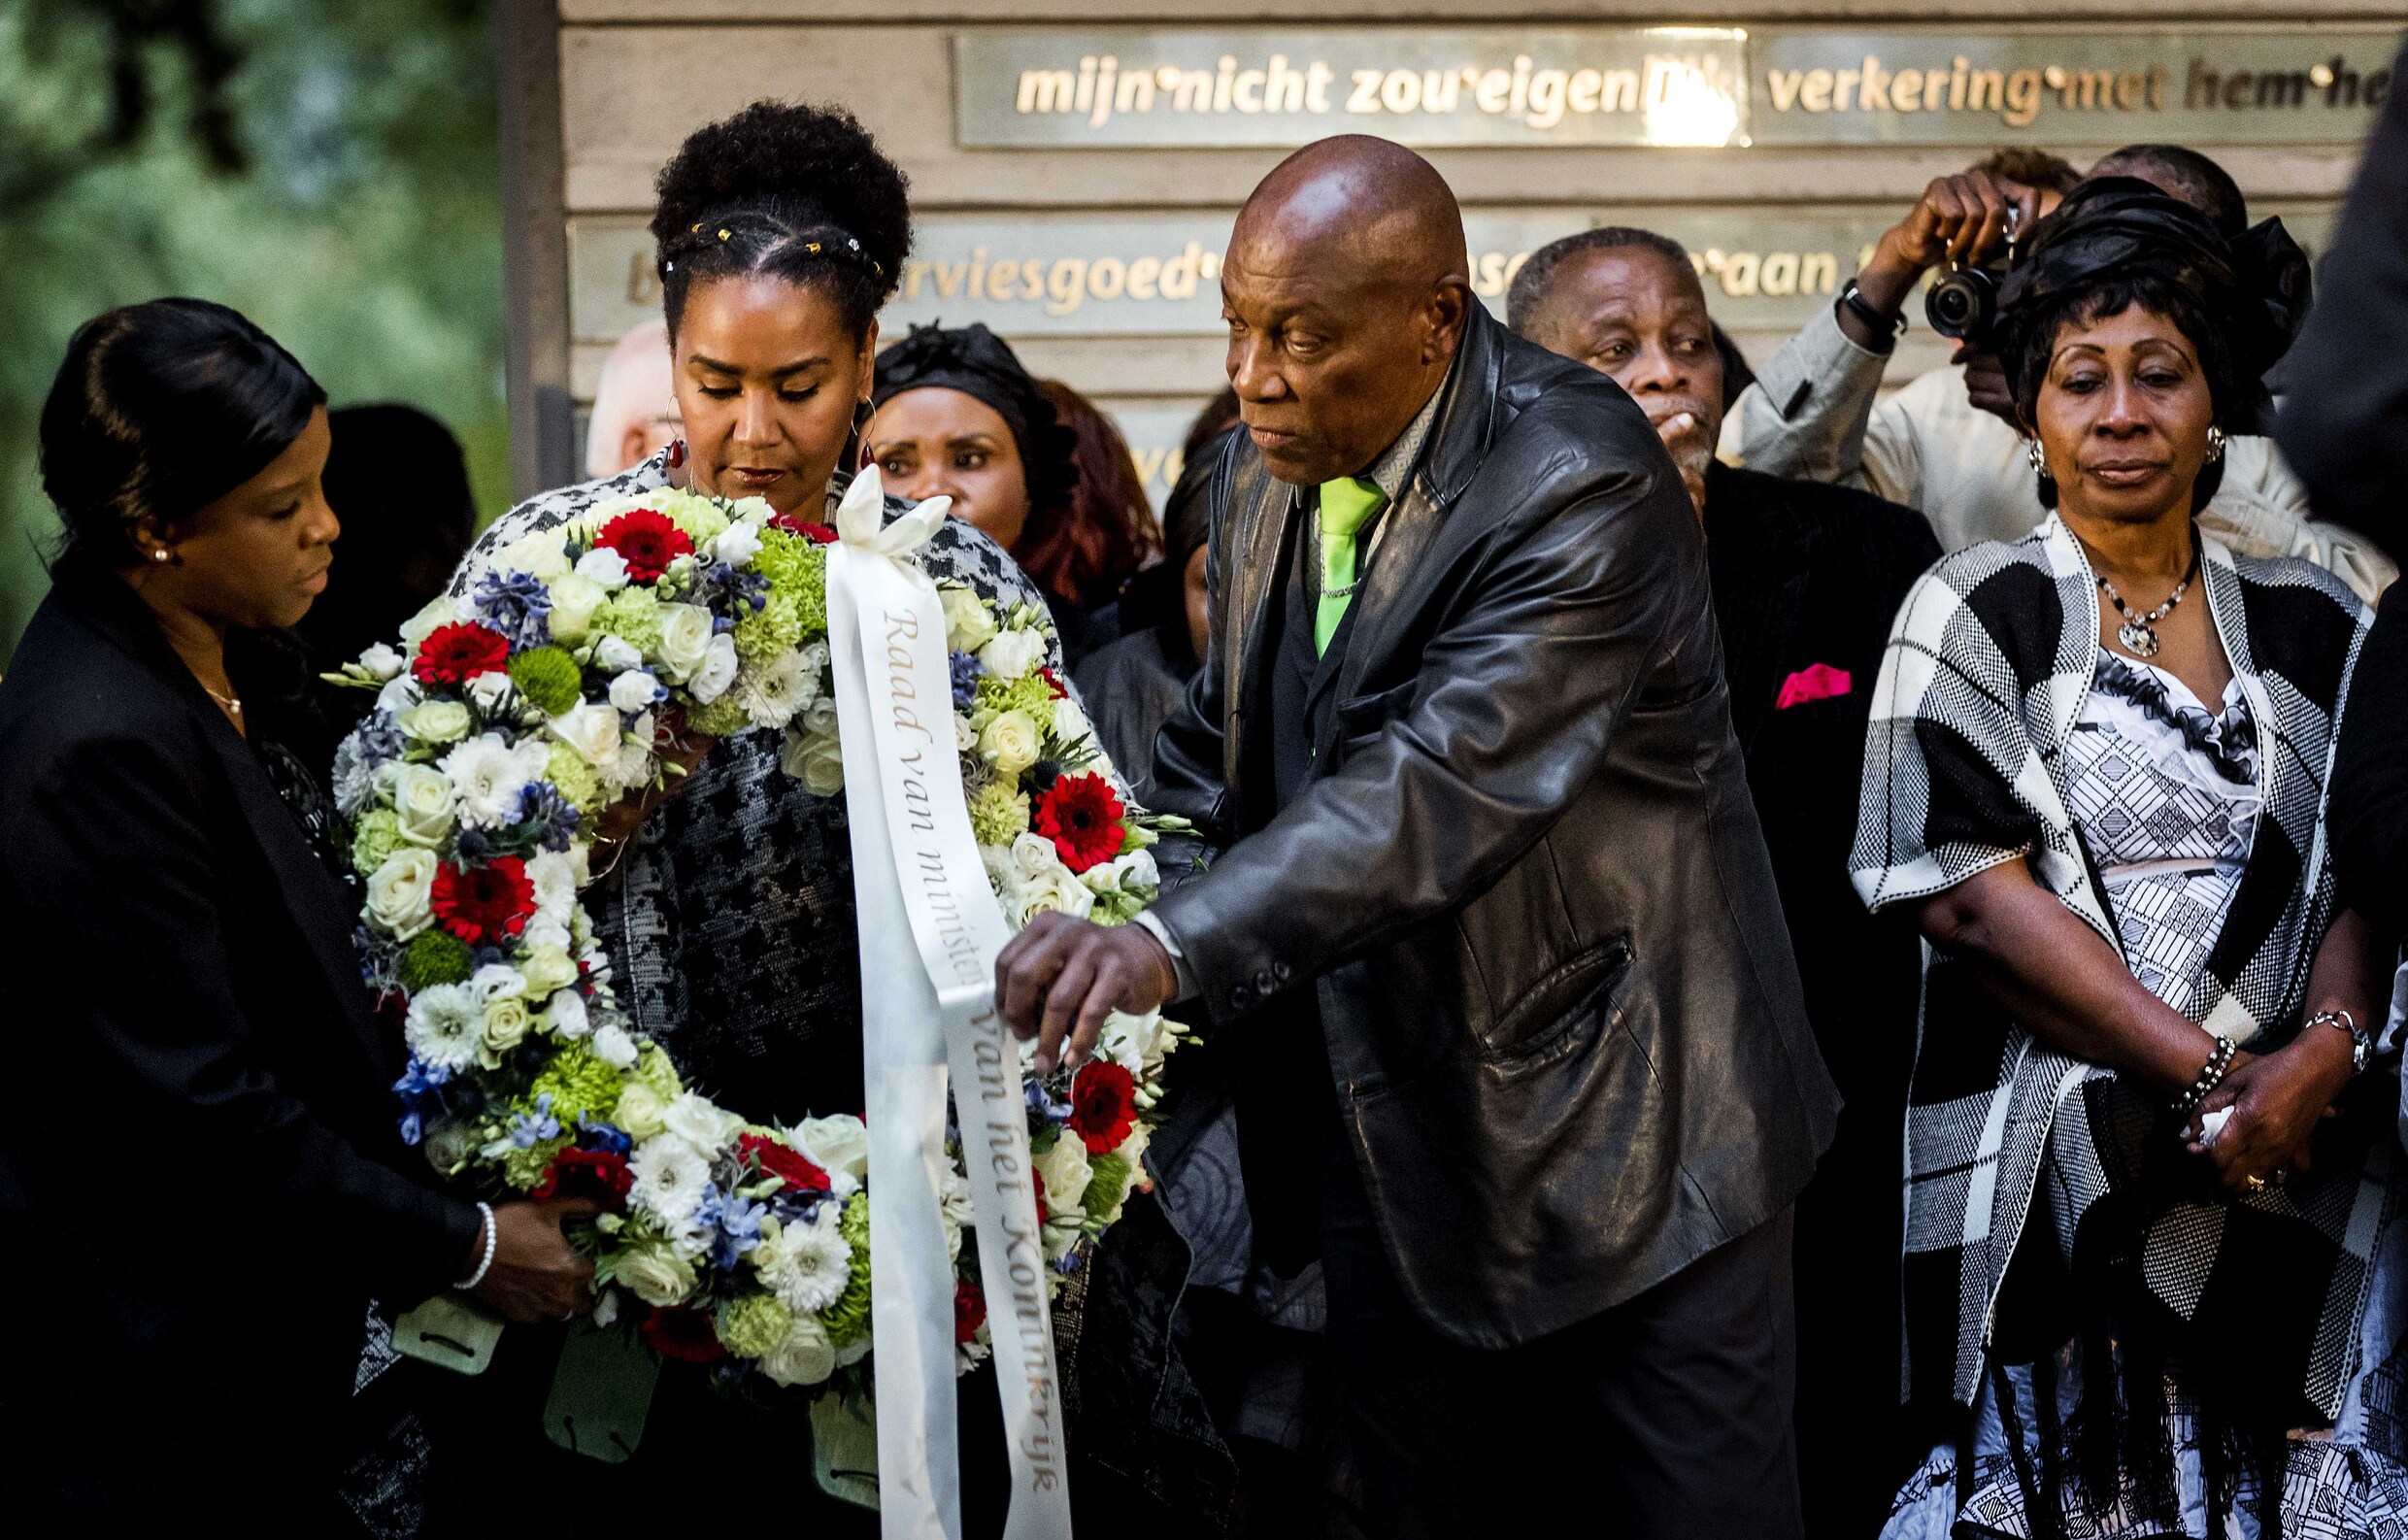 ‘Herdenking Bijlmerramp hoort niet te gaan over criminele slachtoffers’